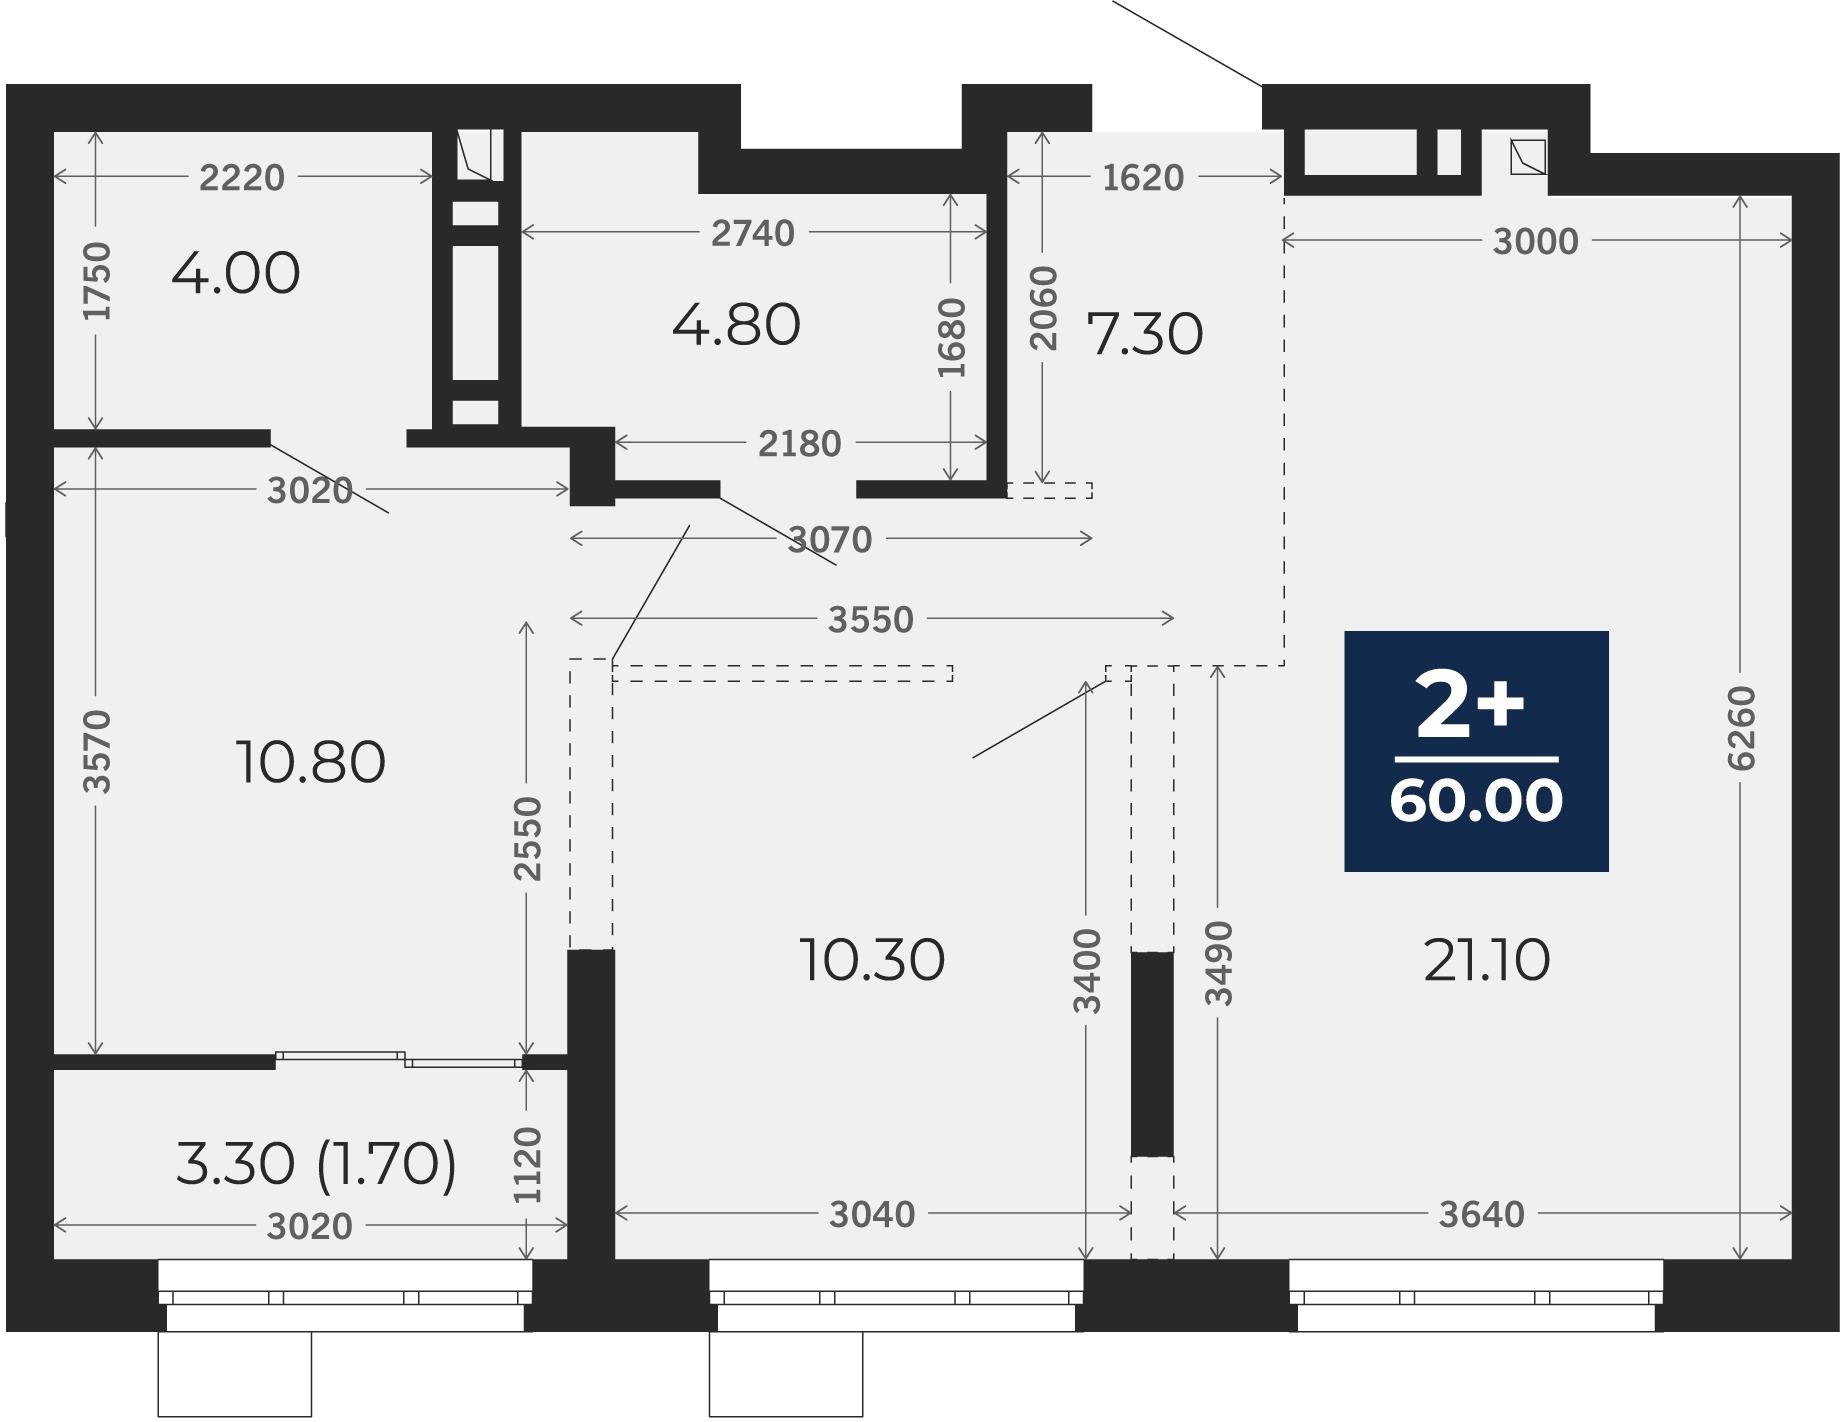 Квартира № 92, 2-комнатная, 60 кв. м, 15 этаж